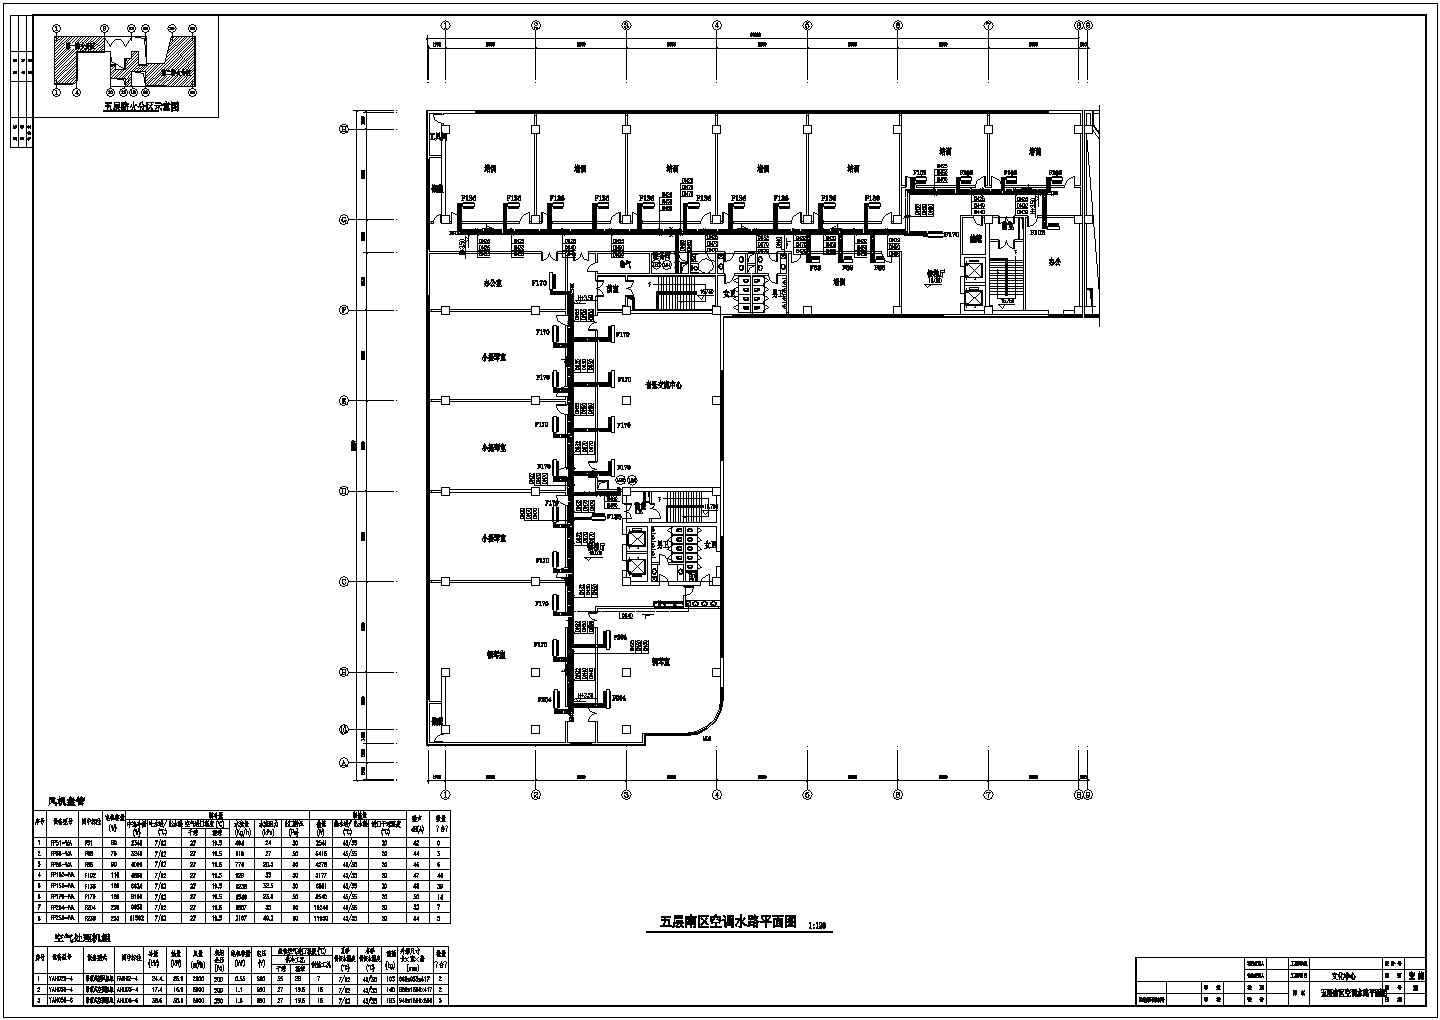 商业广场及活动中心全套空调通风防排烟系统工程设计施工图（地源热泵系统）